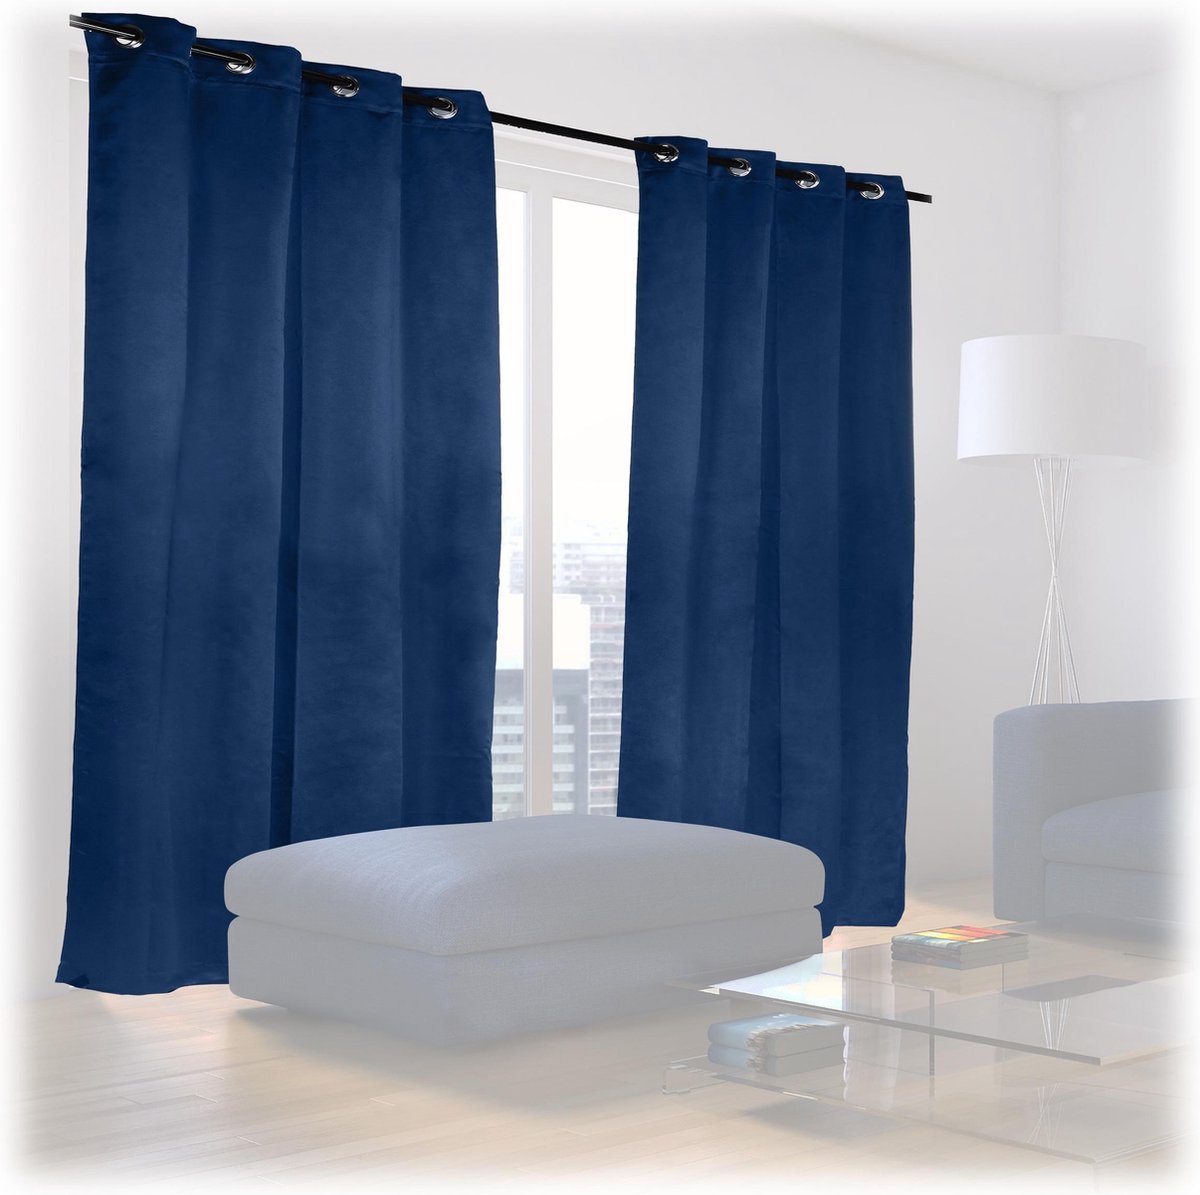 Relaxdays verduisterende gordijnen - 2x - blauw - kant en klaar - slaapkamer gordijn - set - 175x135cm